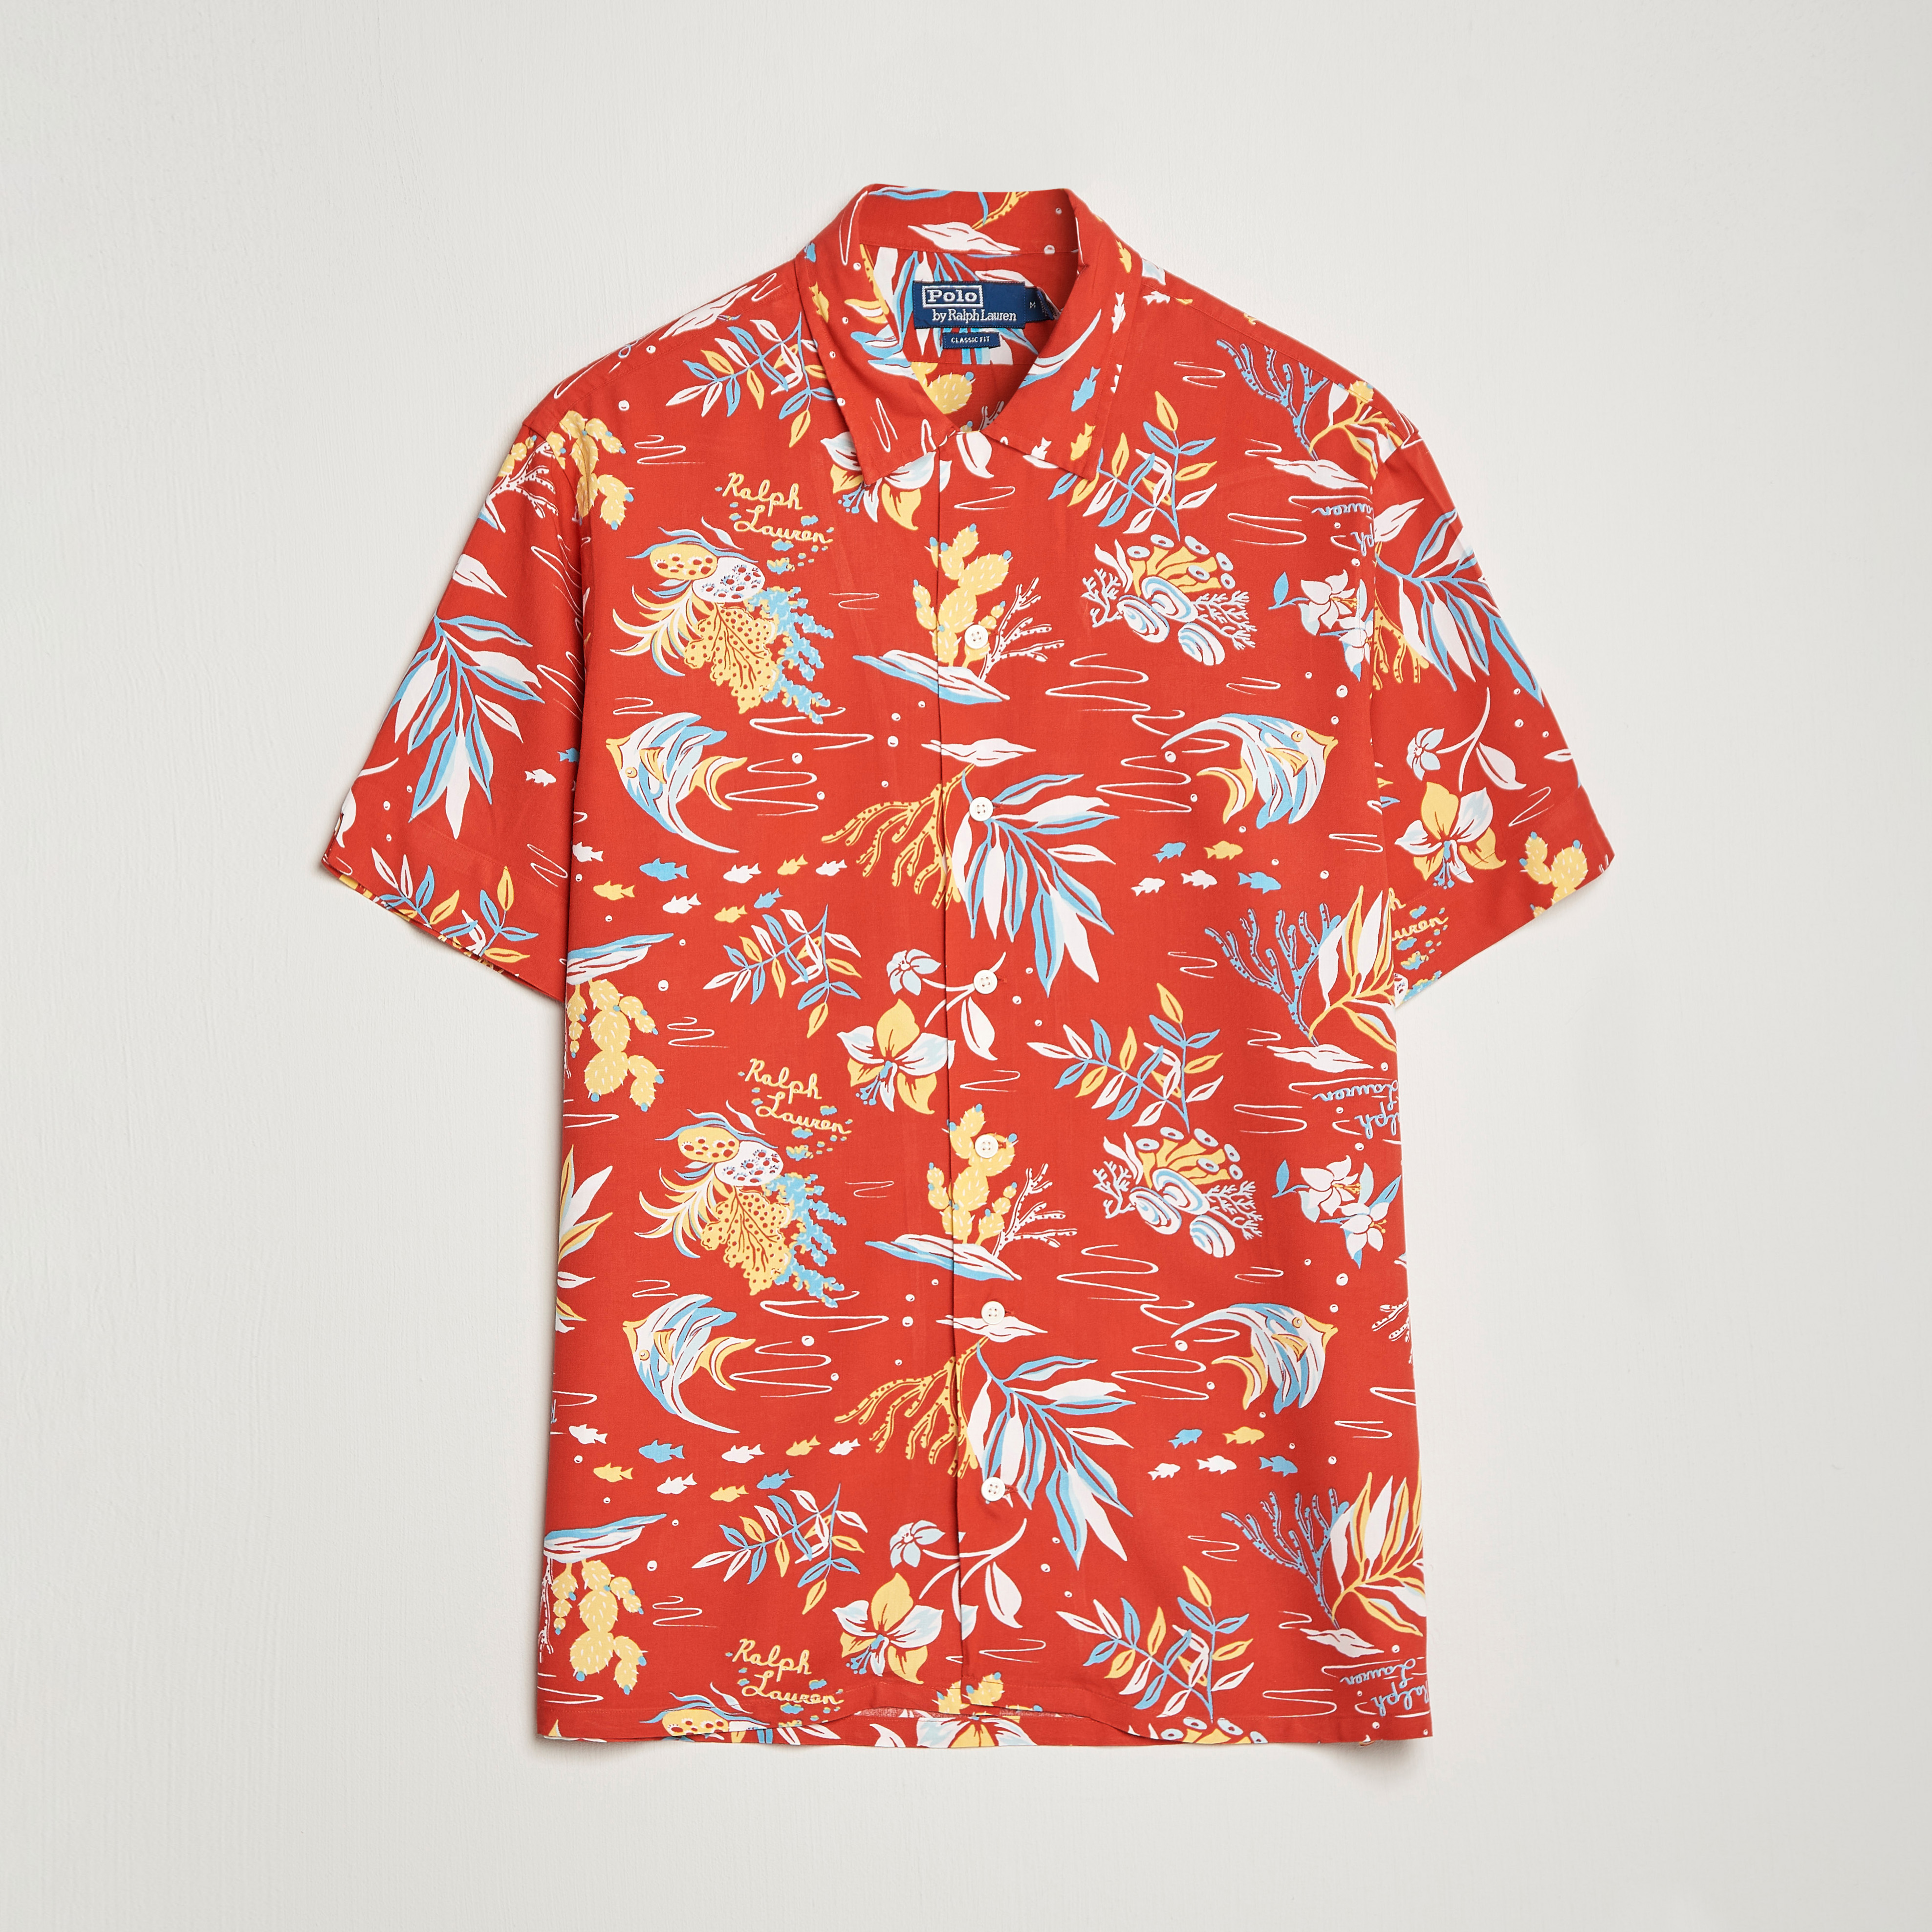 Polo Ralph Lauren Printed Flower Short Sleeve Shirt Sun Sand Surf 